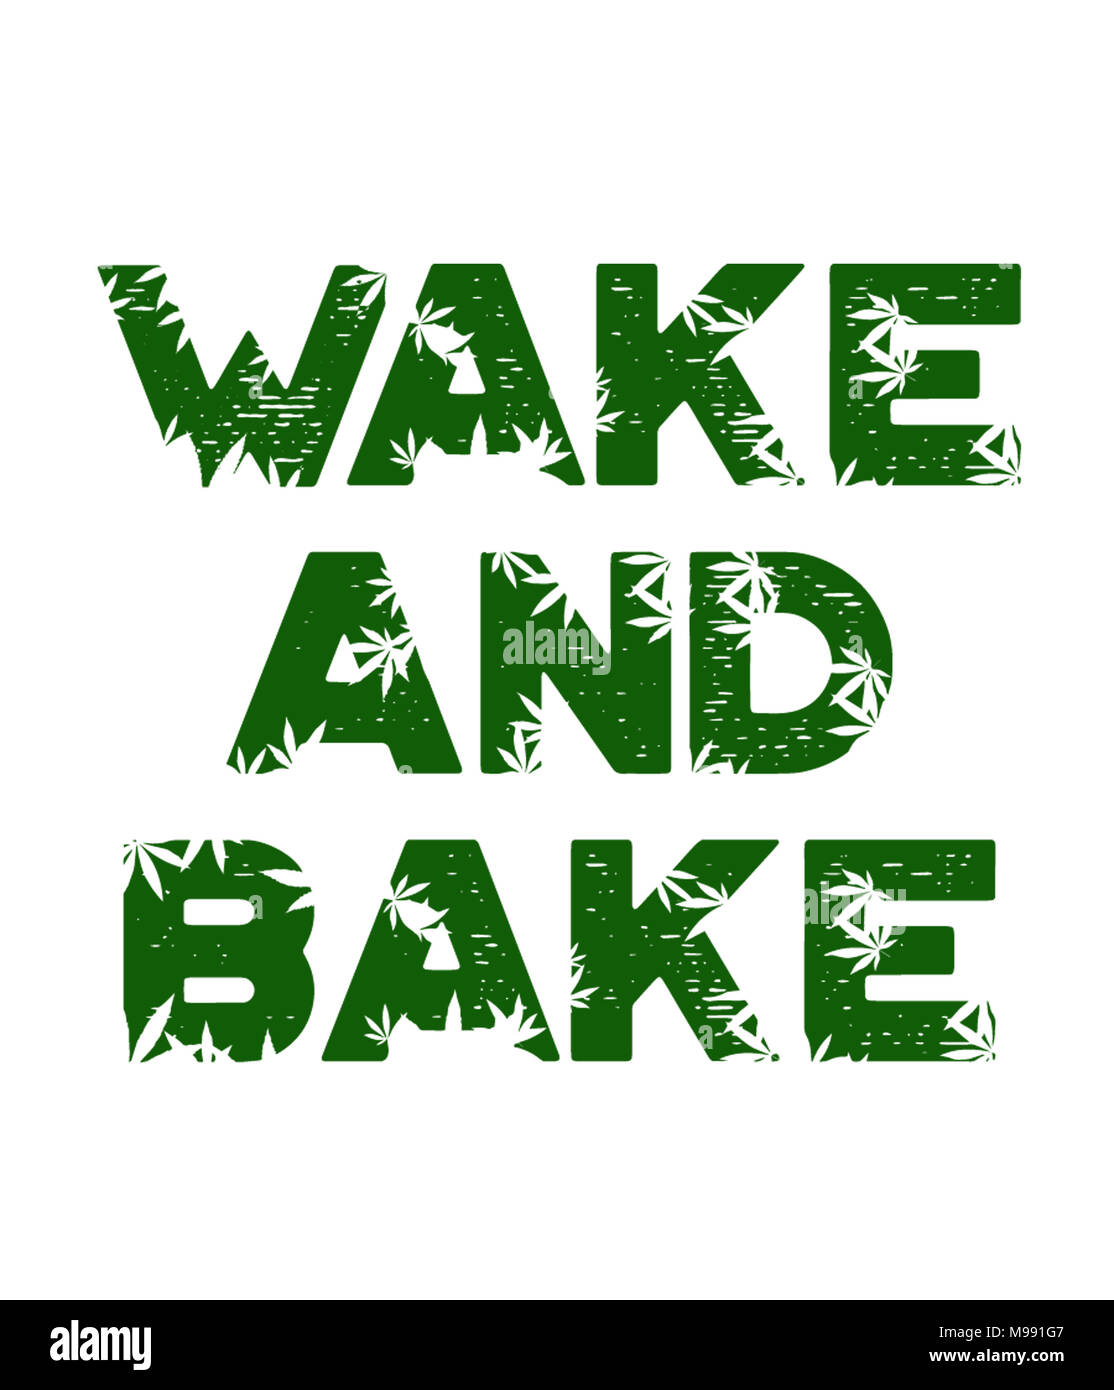 Wake_and_bake